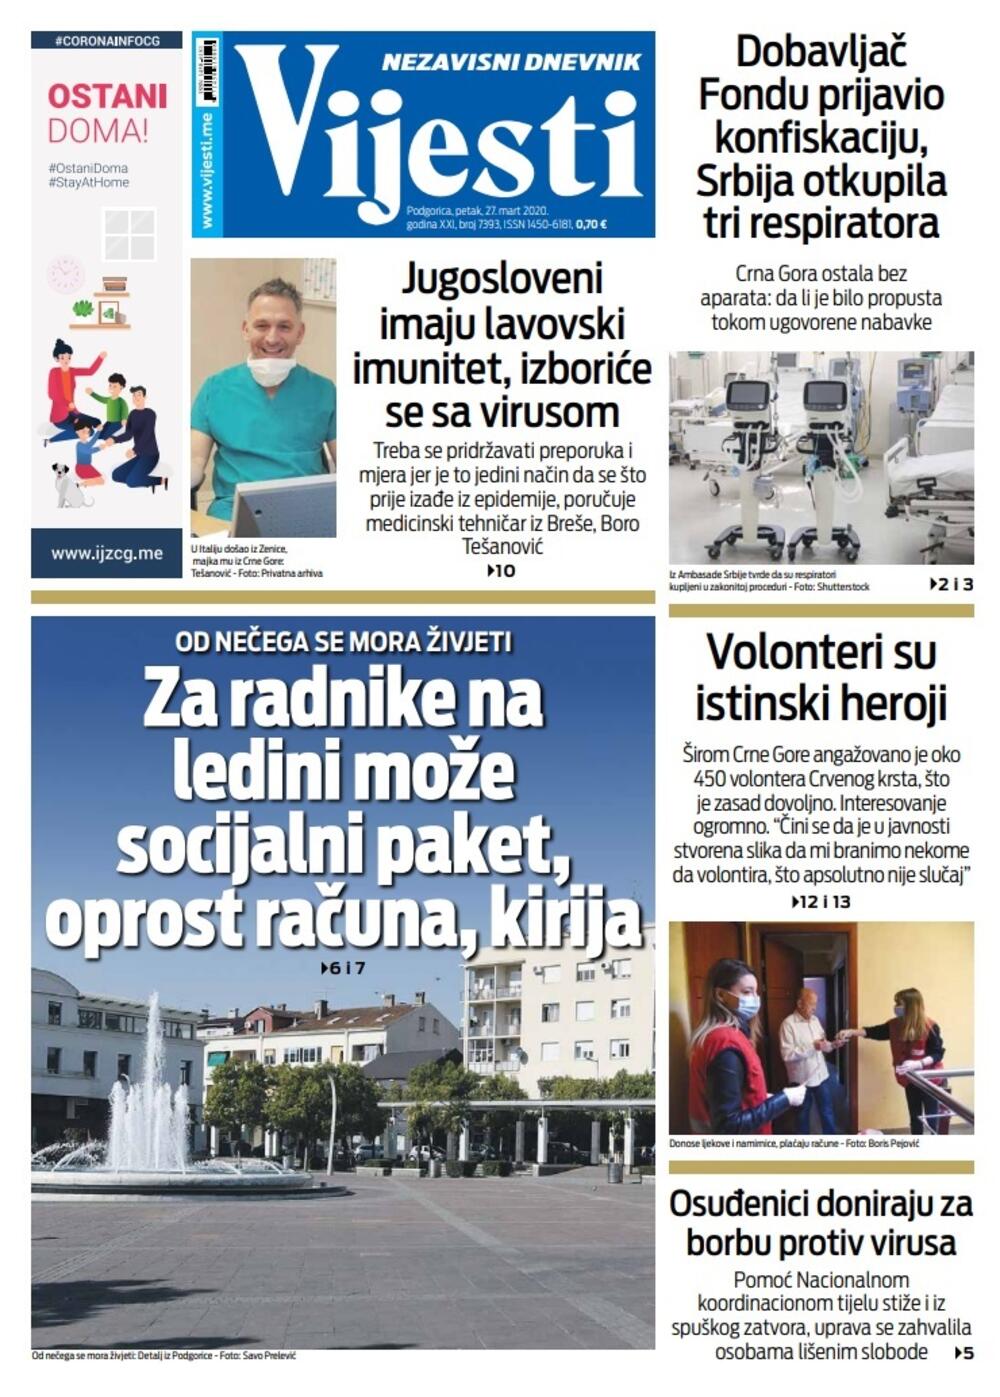 Naslovna strana "Vijesti" za 27. mart 2020. godine, Foto: Vijesti